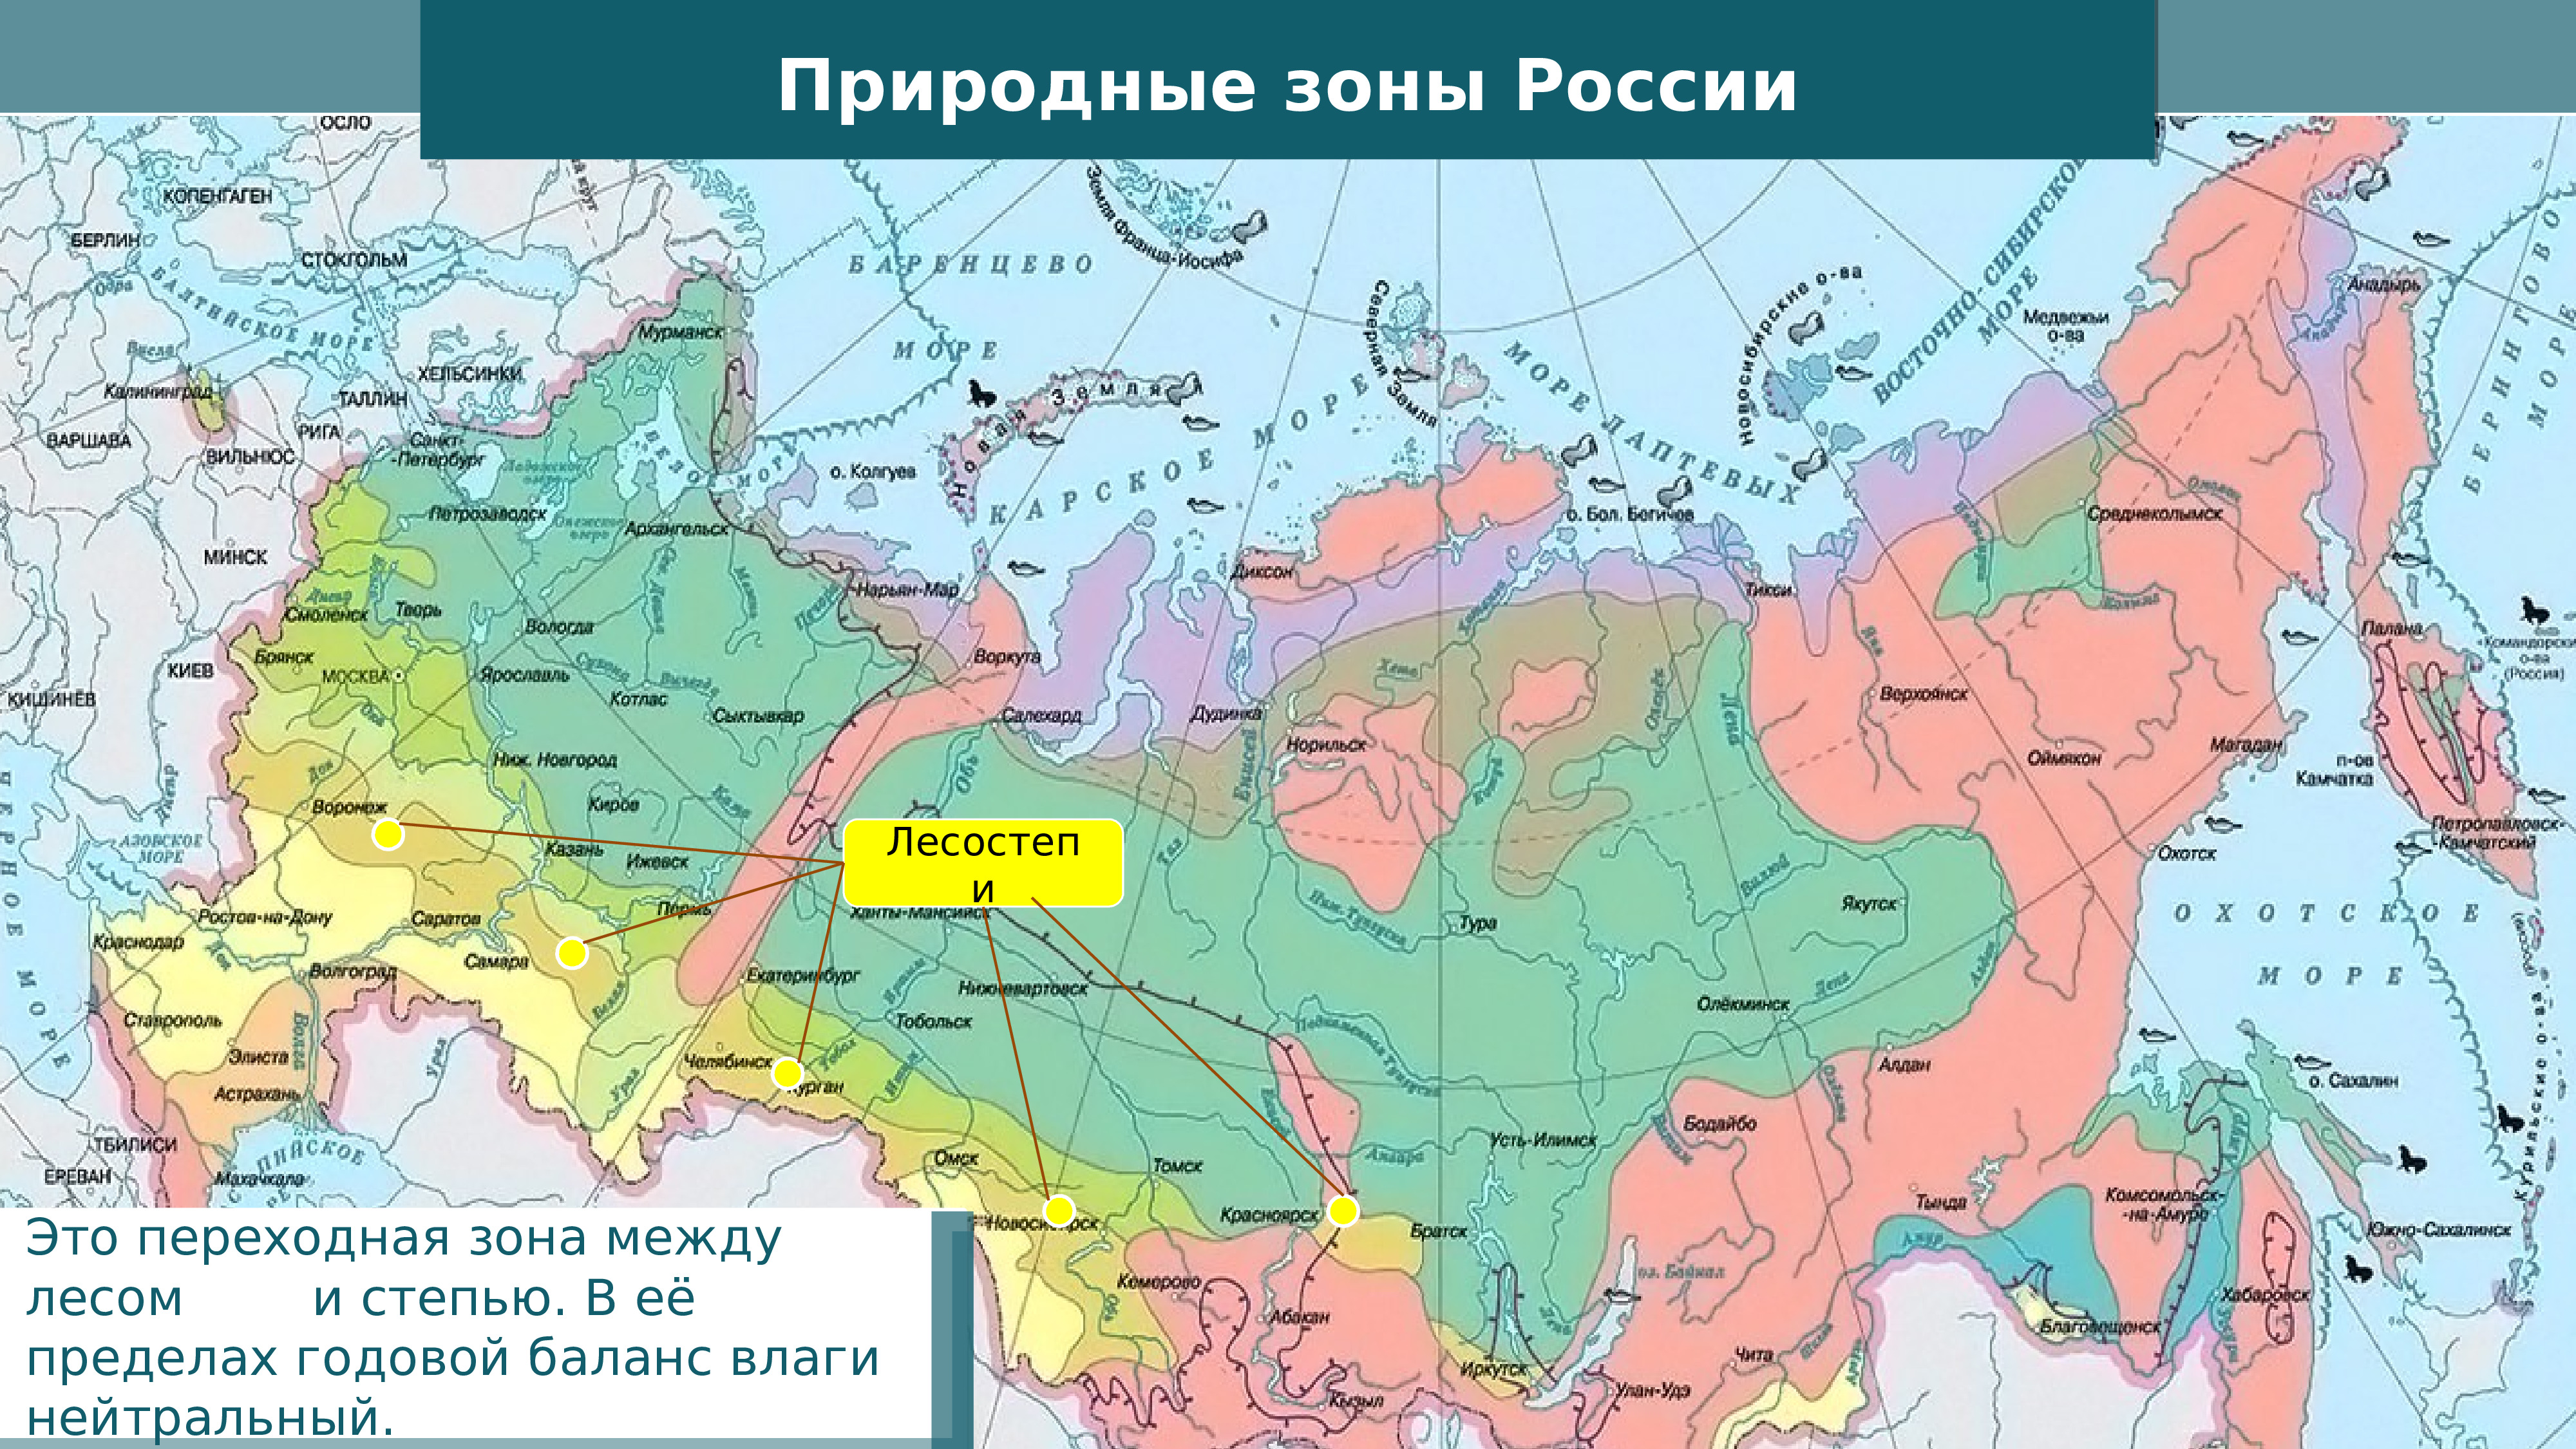 Какая природная зона является переходной. Пустыни и полупустыни России географическое положение на карте. Карта природных зон России субтропики. Природные зоны России пустыни и полупустыни карта. Лесостепи на карте России природных зон.